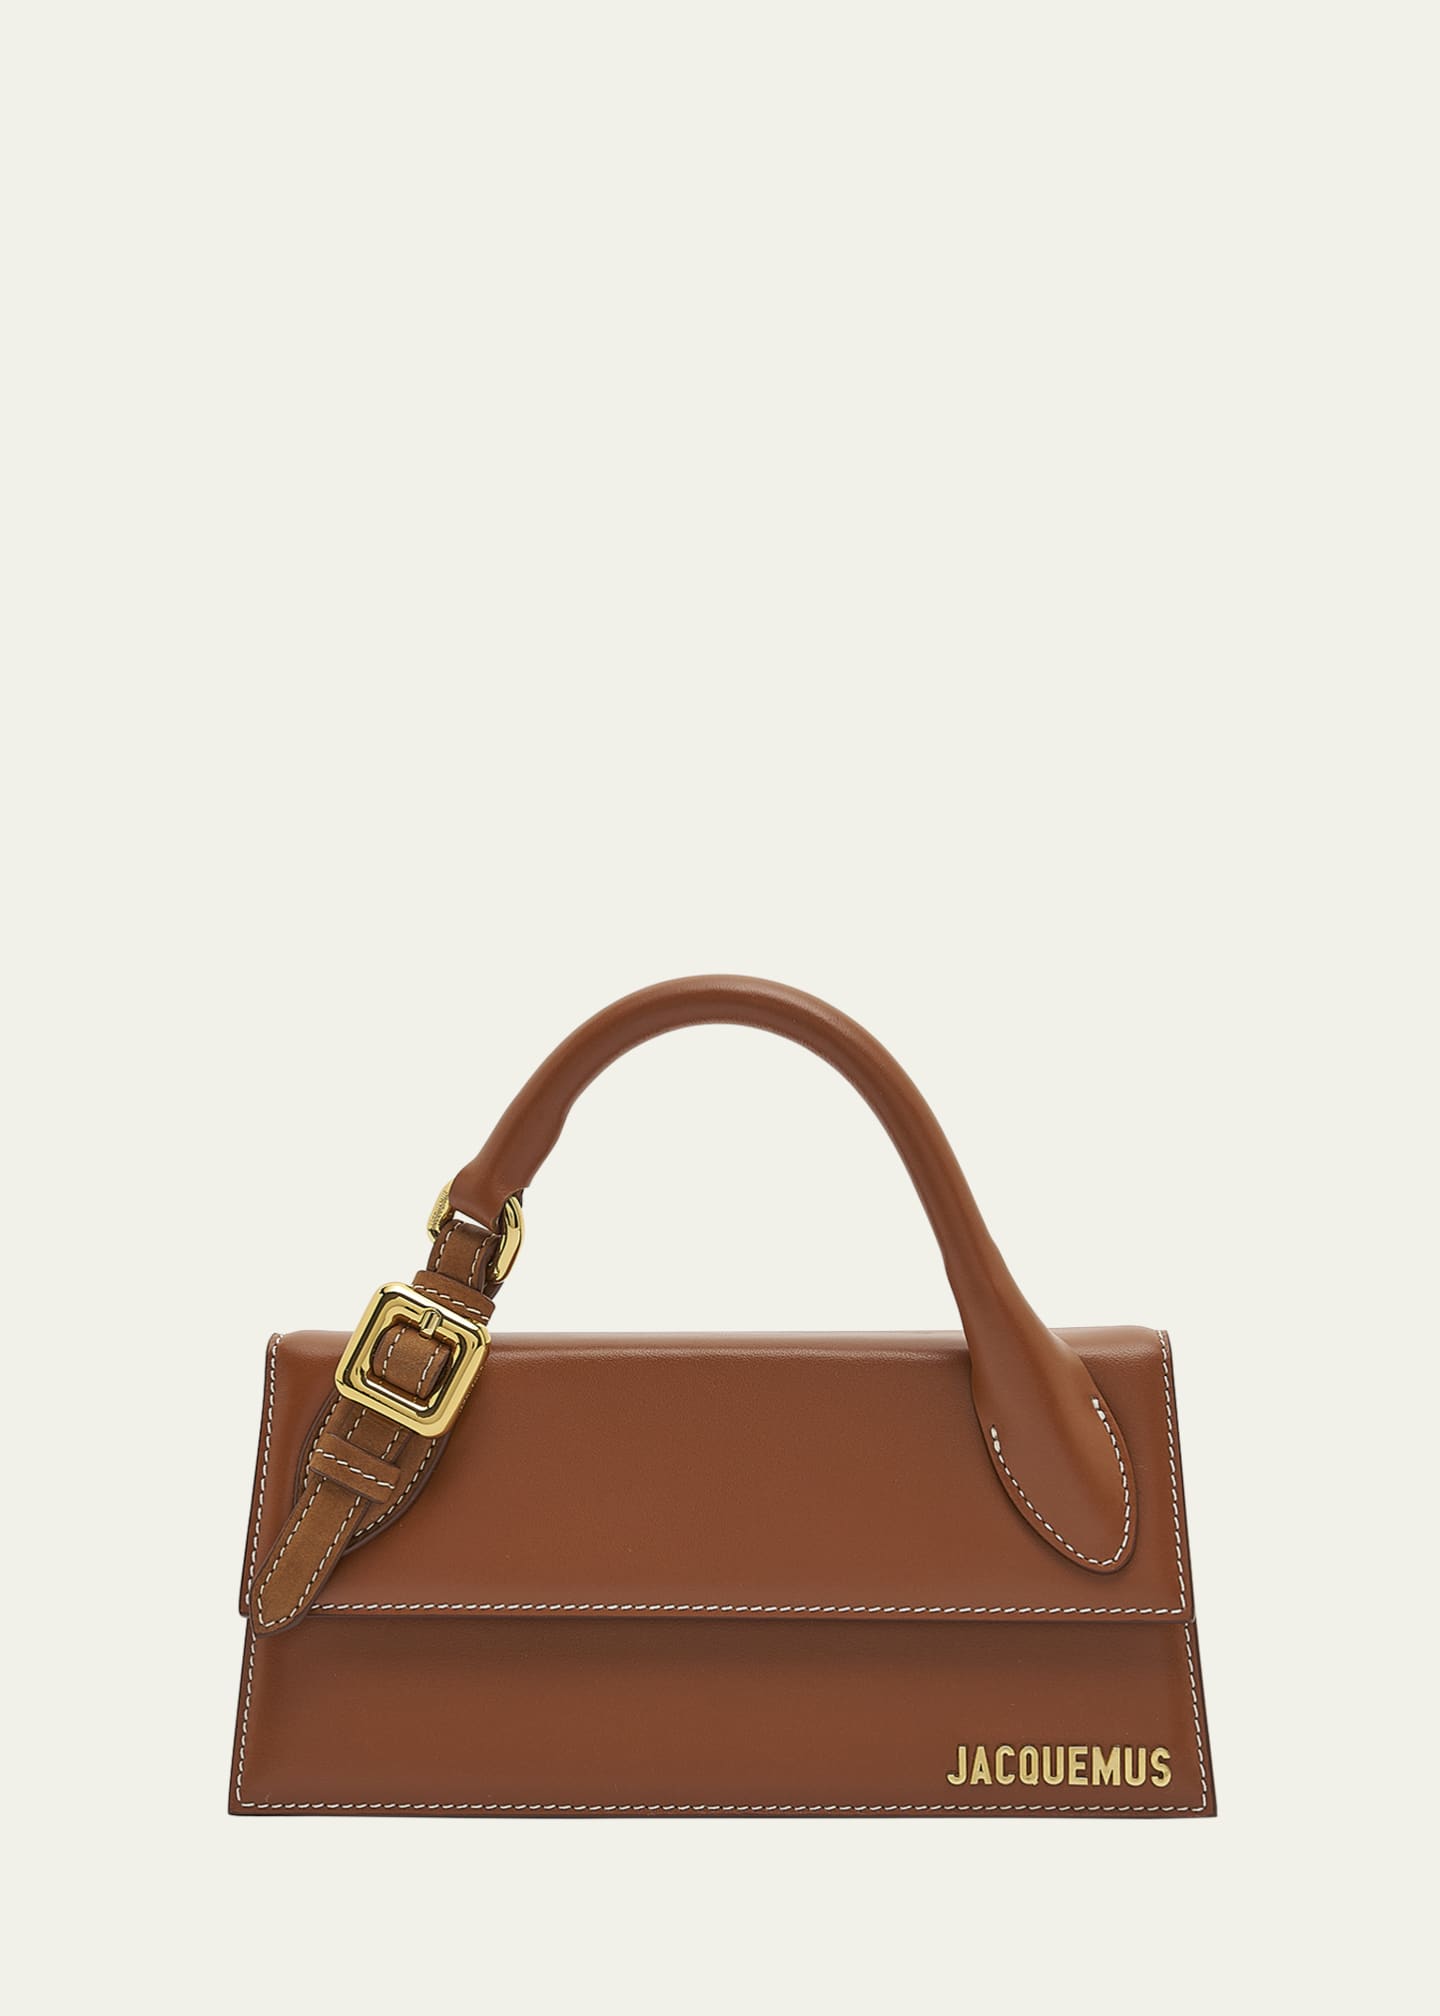 JACQUEMUS, Medium Le Chiquito Leather Shoulder Bag